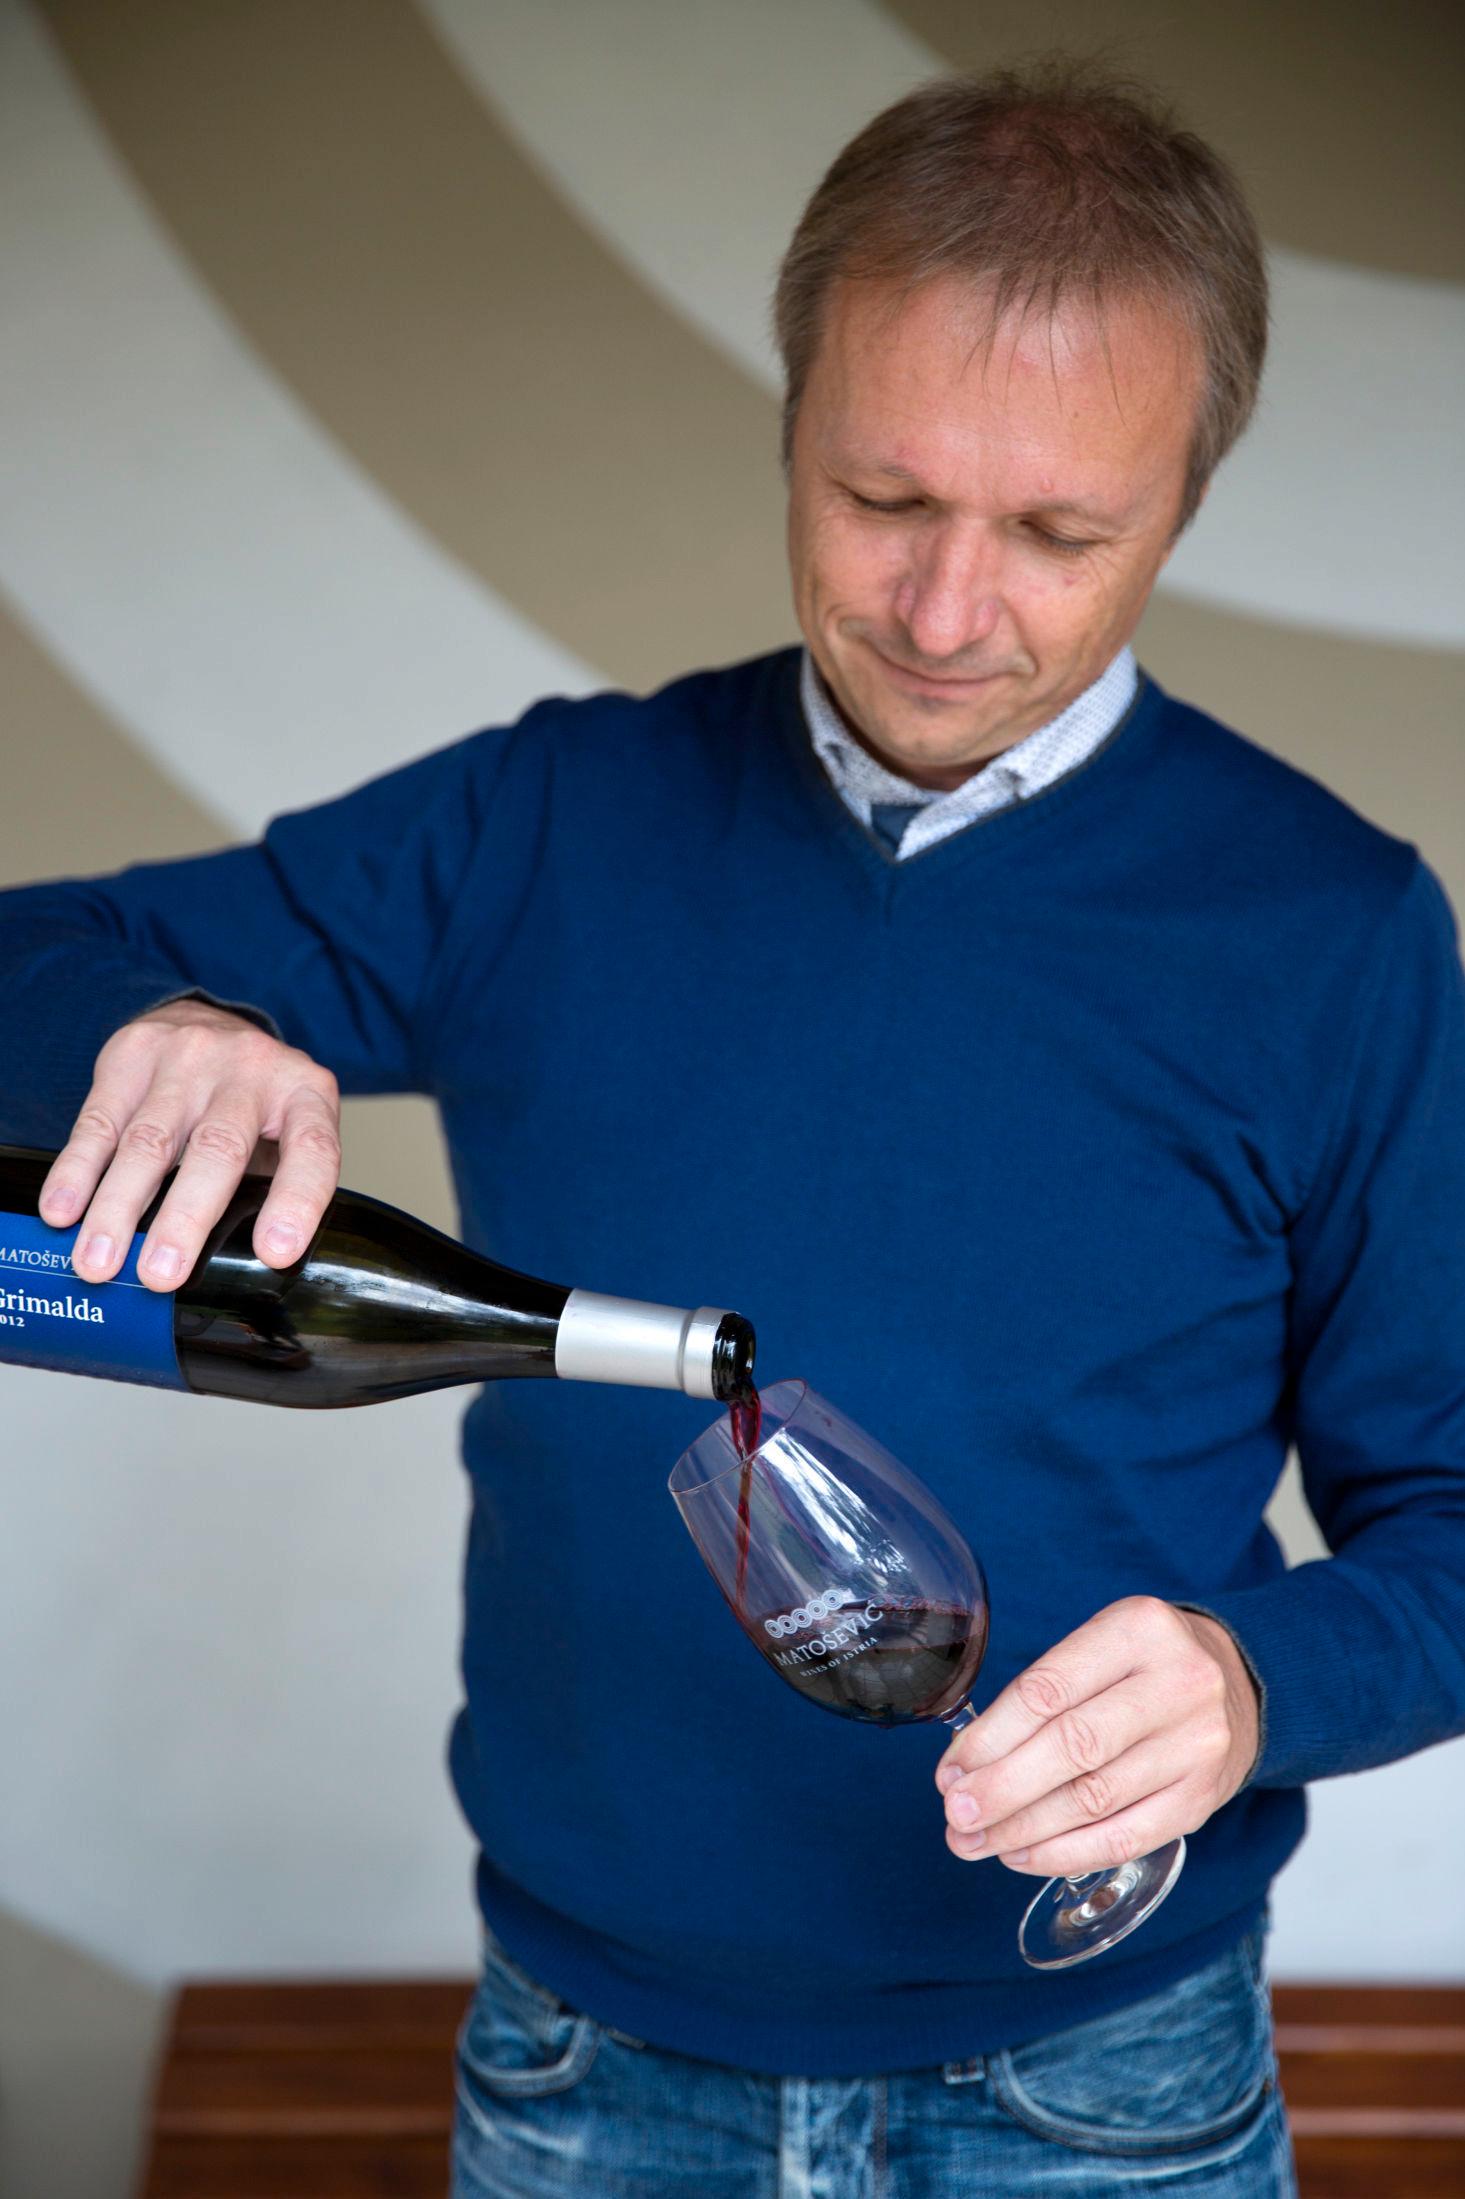 VIN: Ivaca Matosevic er en av Istrias fremste vinmakere. Grimalda er en av de populære vinene fra hans vinhus, Mato. Foto: Annika Goldhammer